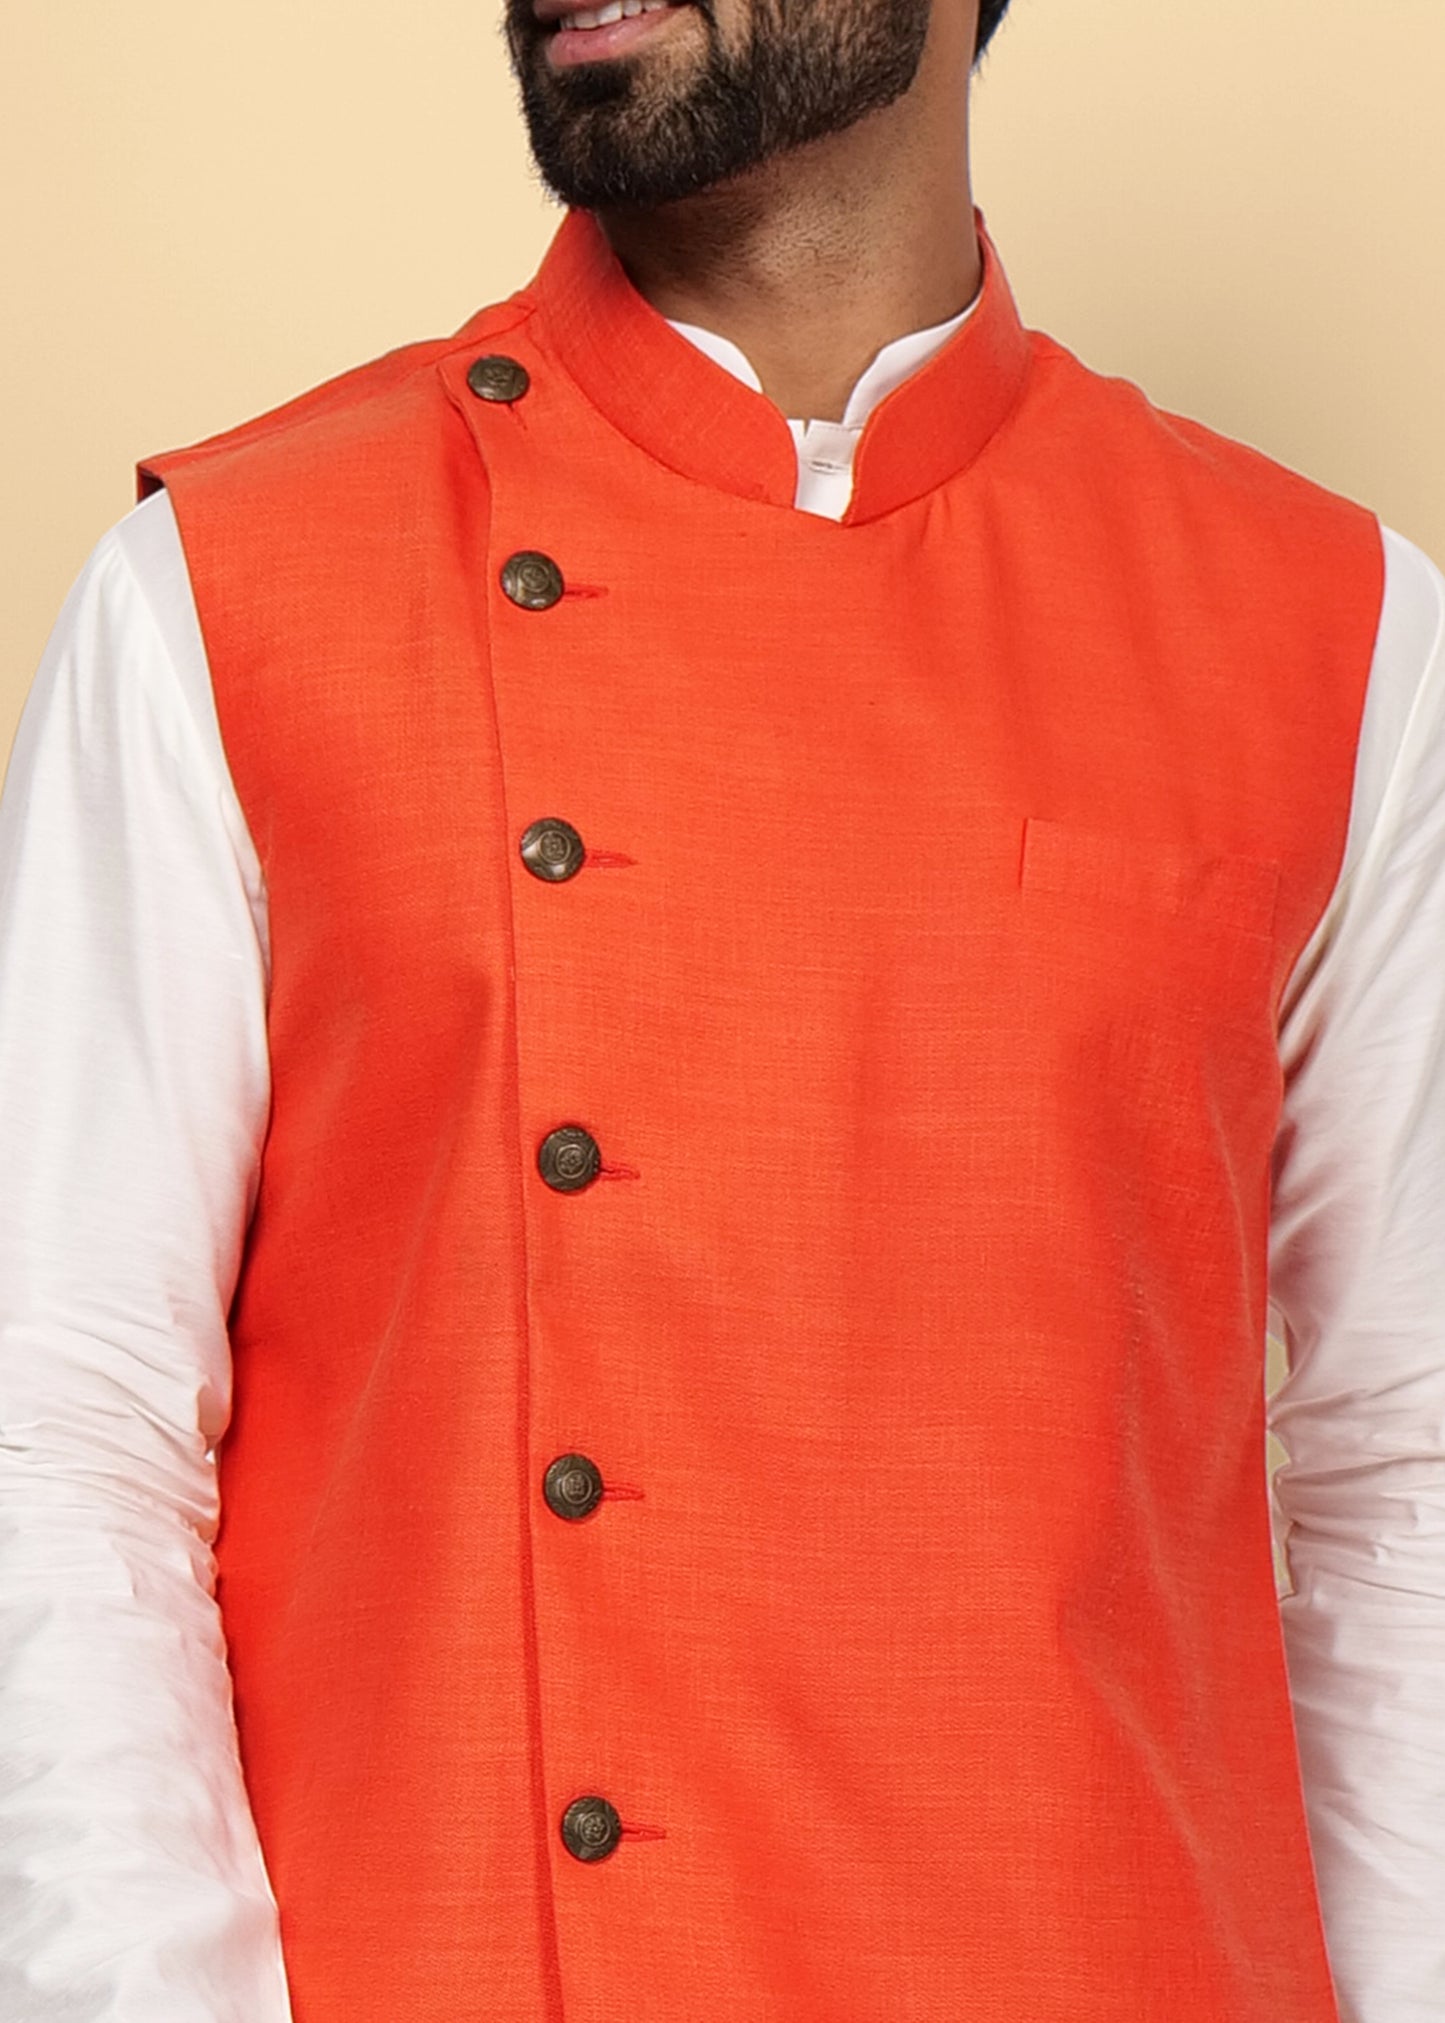 Orange Designer Nehru Jacket